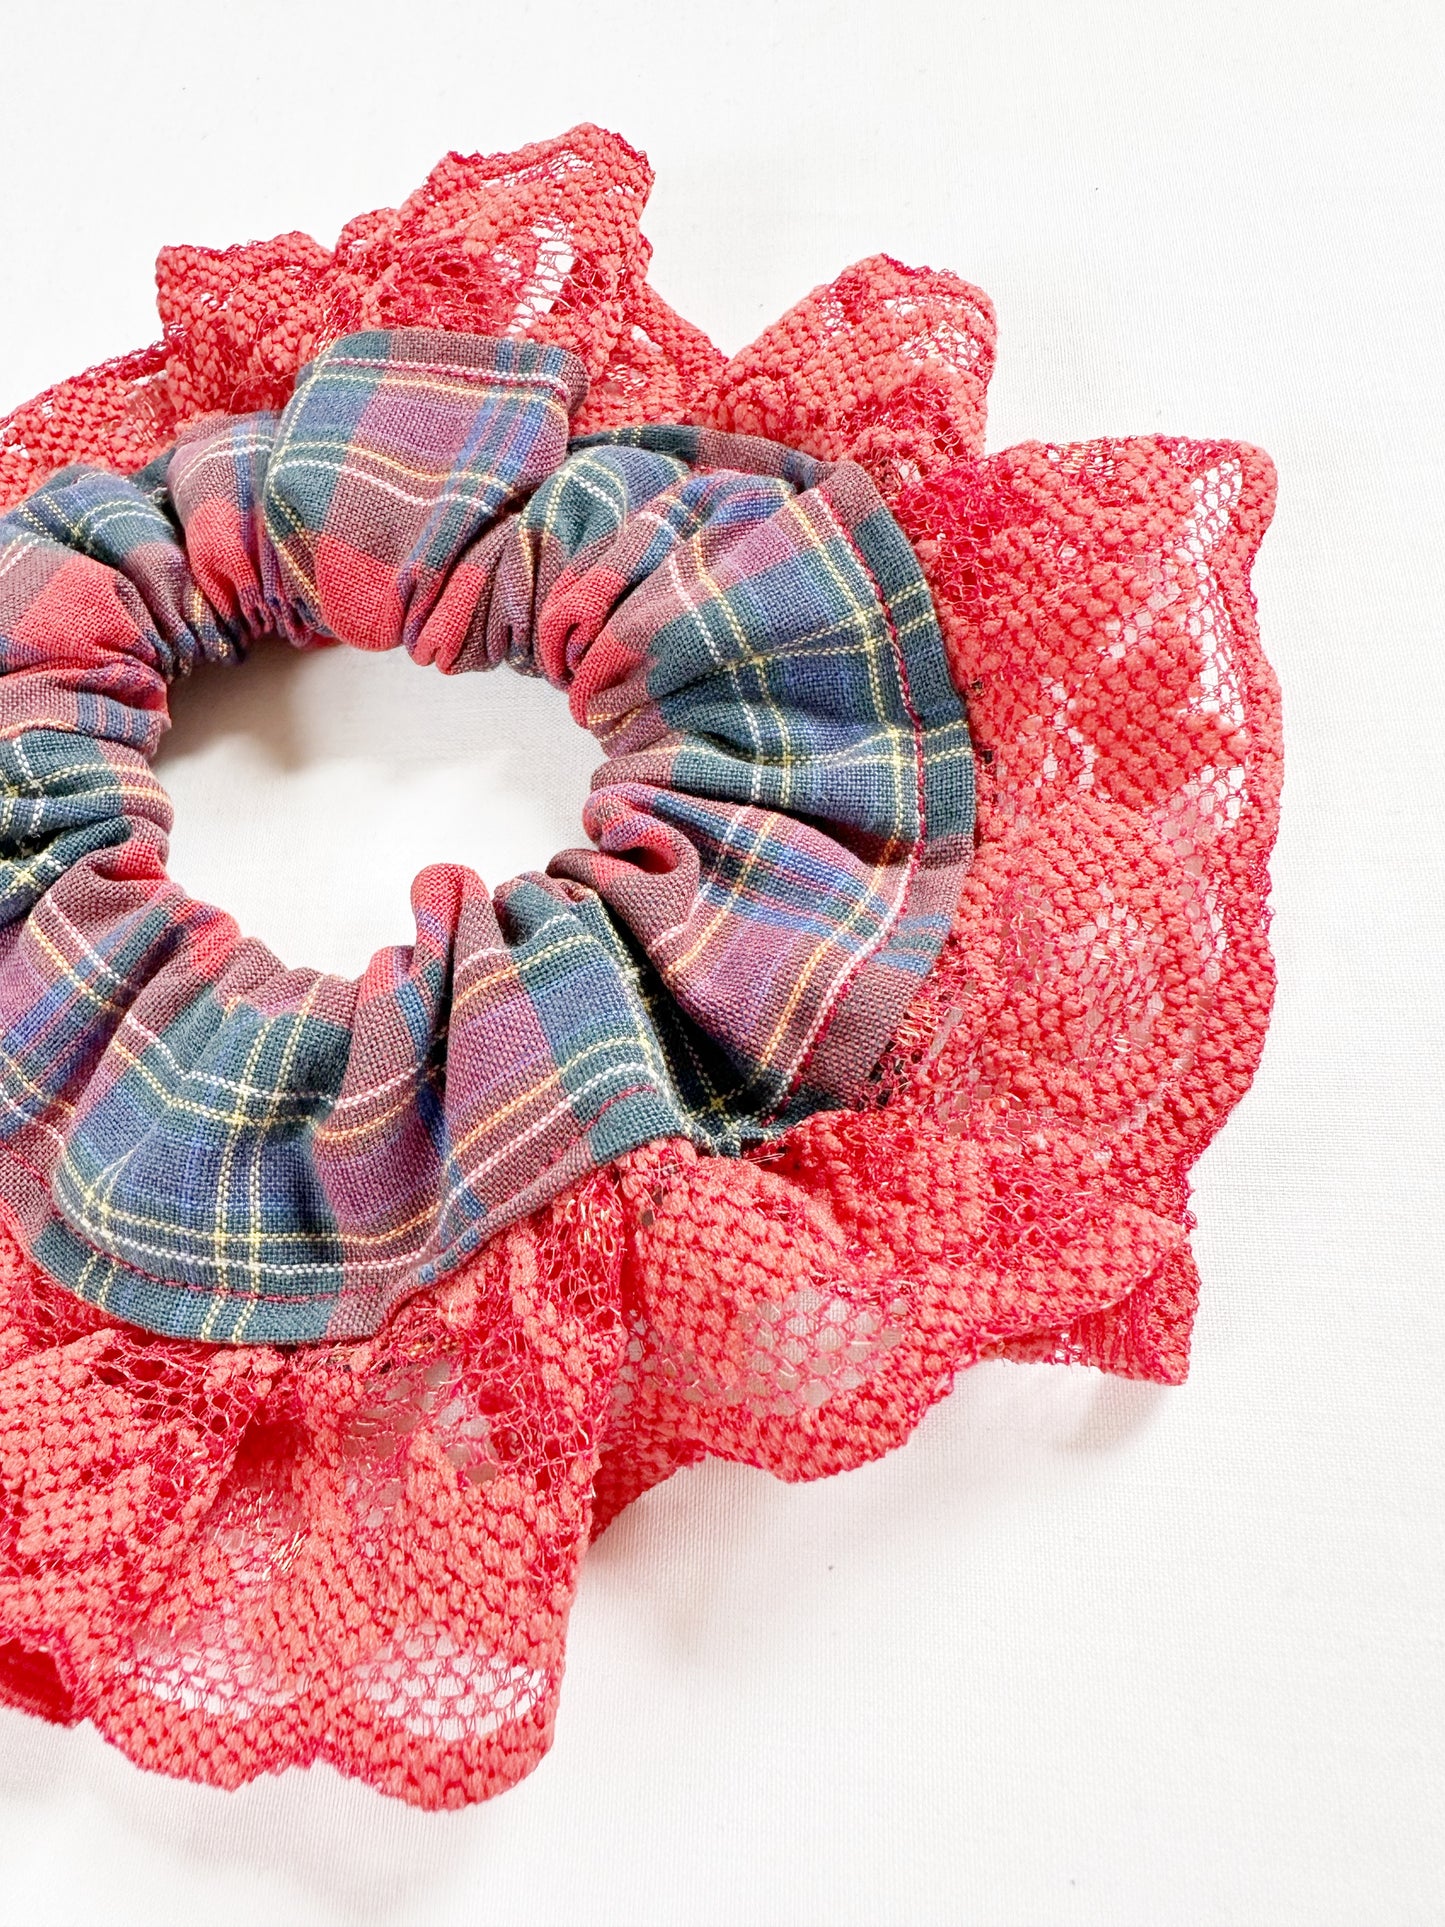 Mini scrunchie in red tartan lace